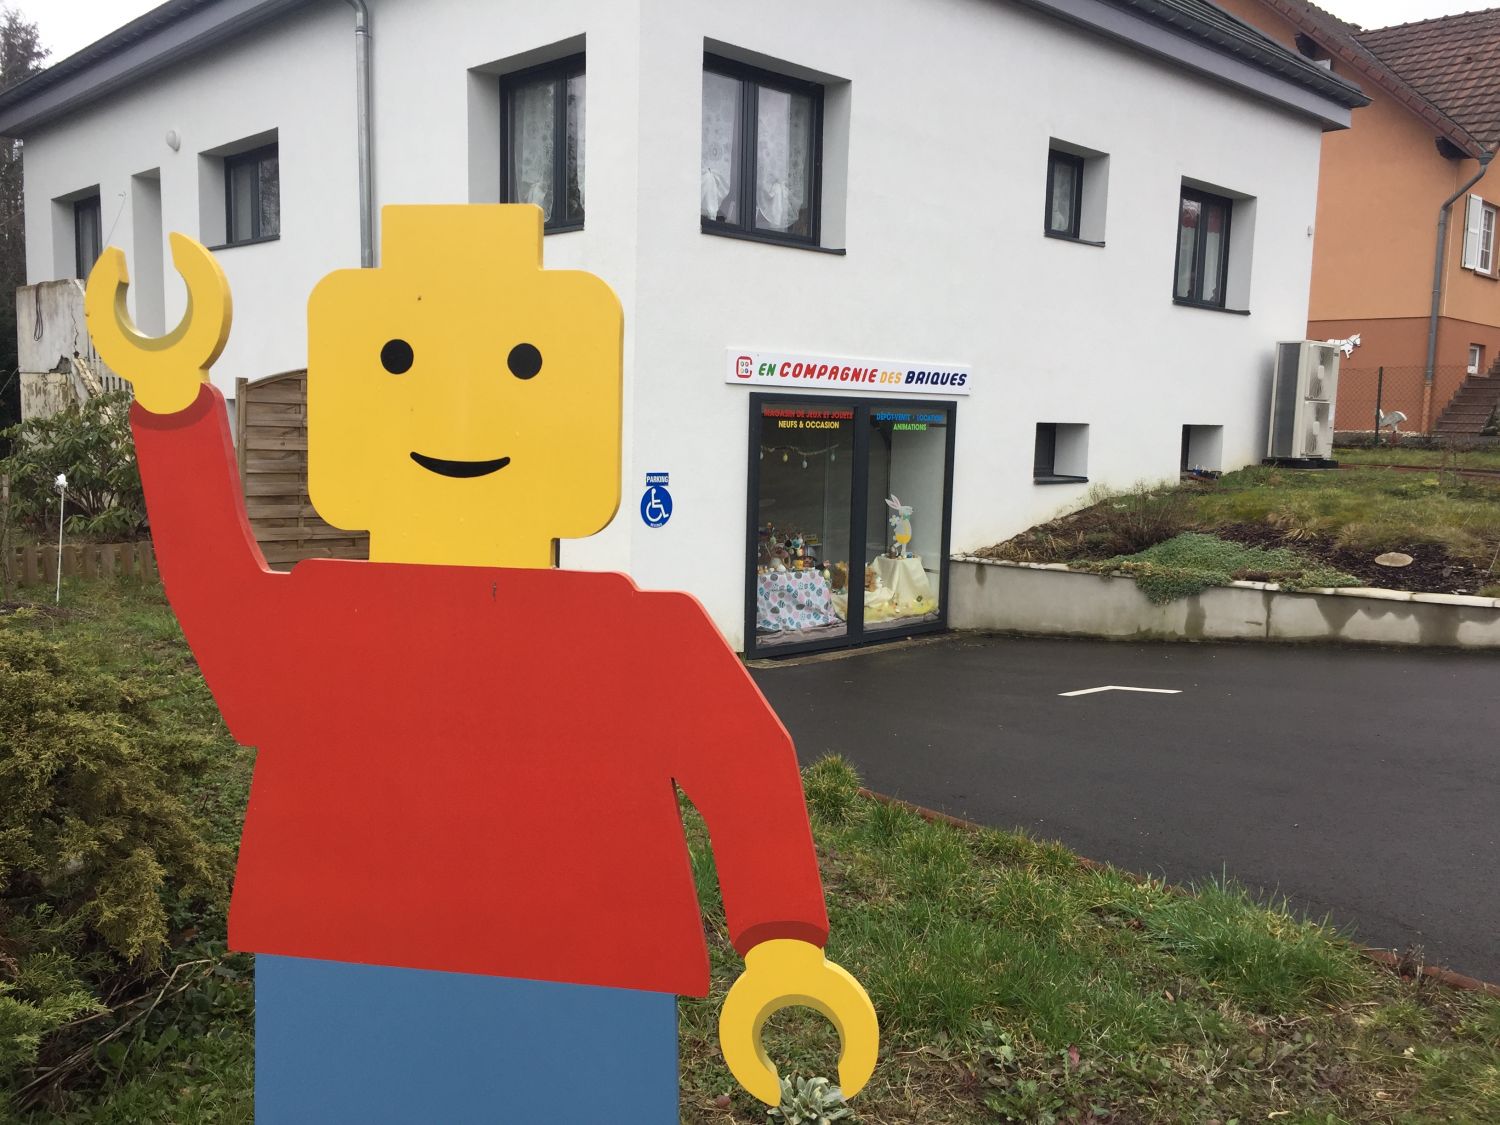 Hilbesheim : un magasin familial propose des ateliers jeux pour occuper les enfants